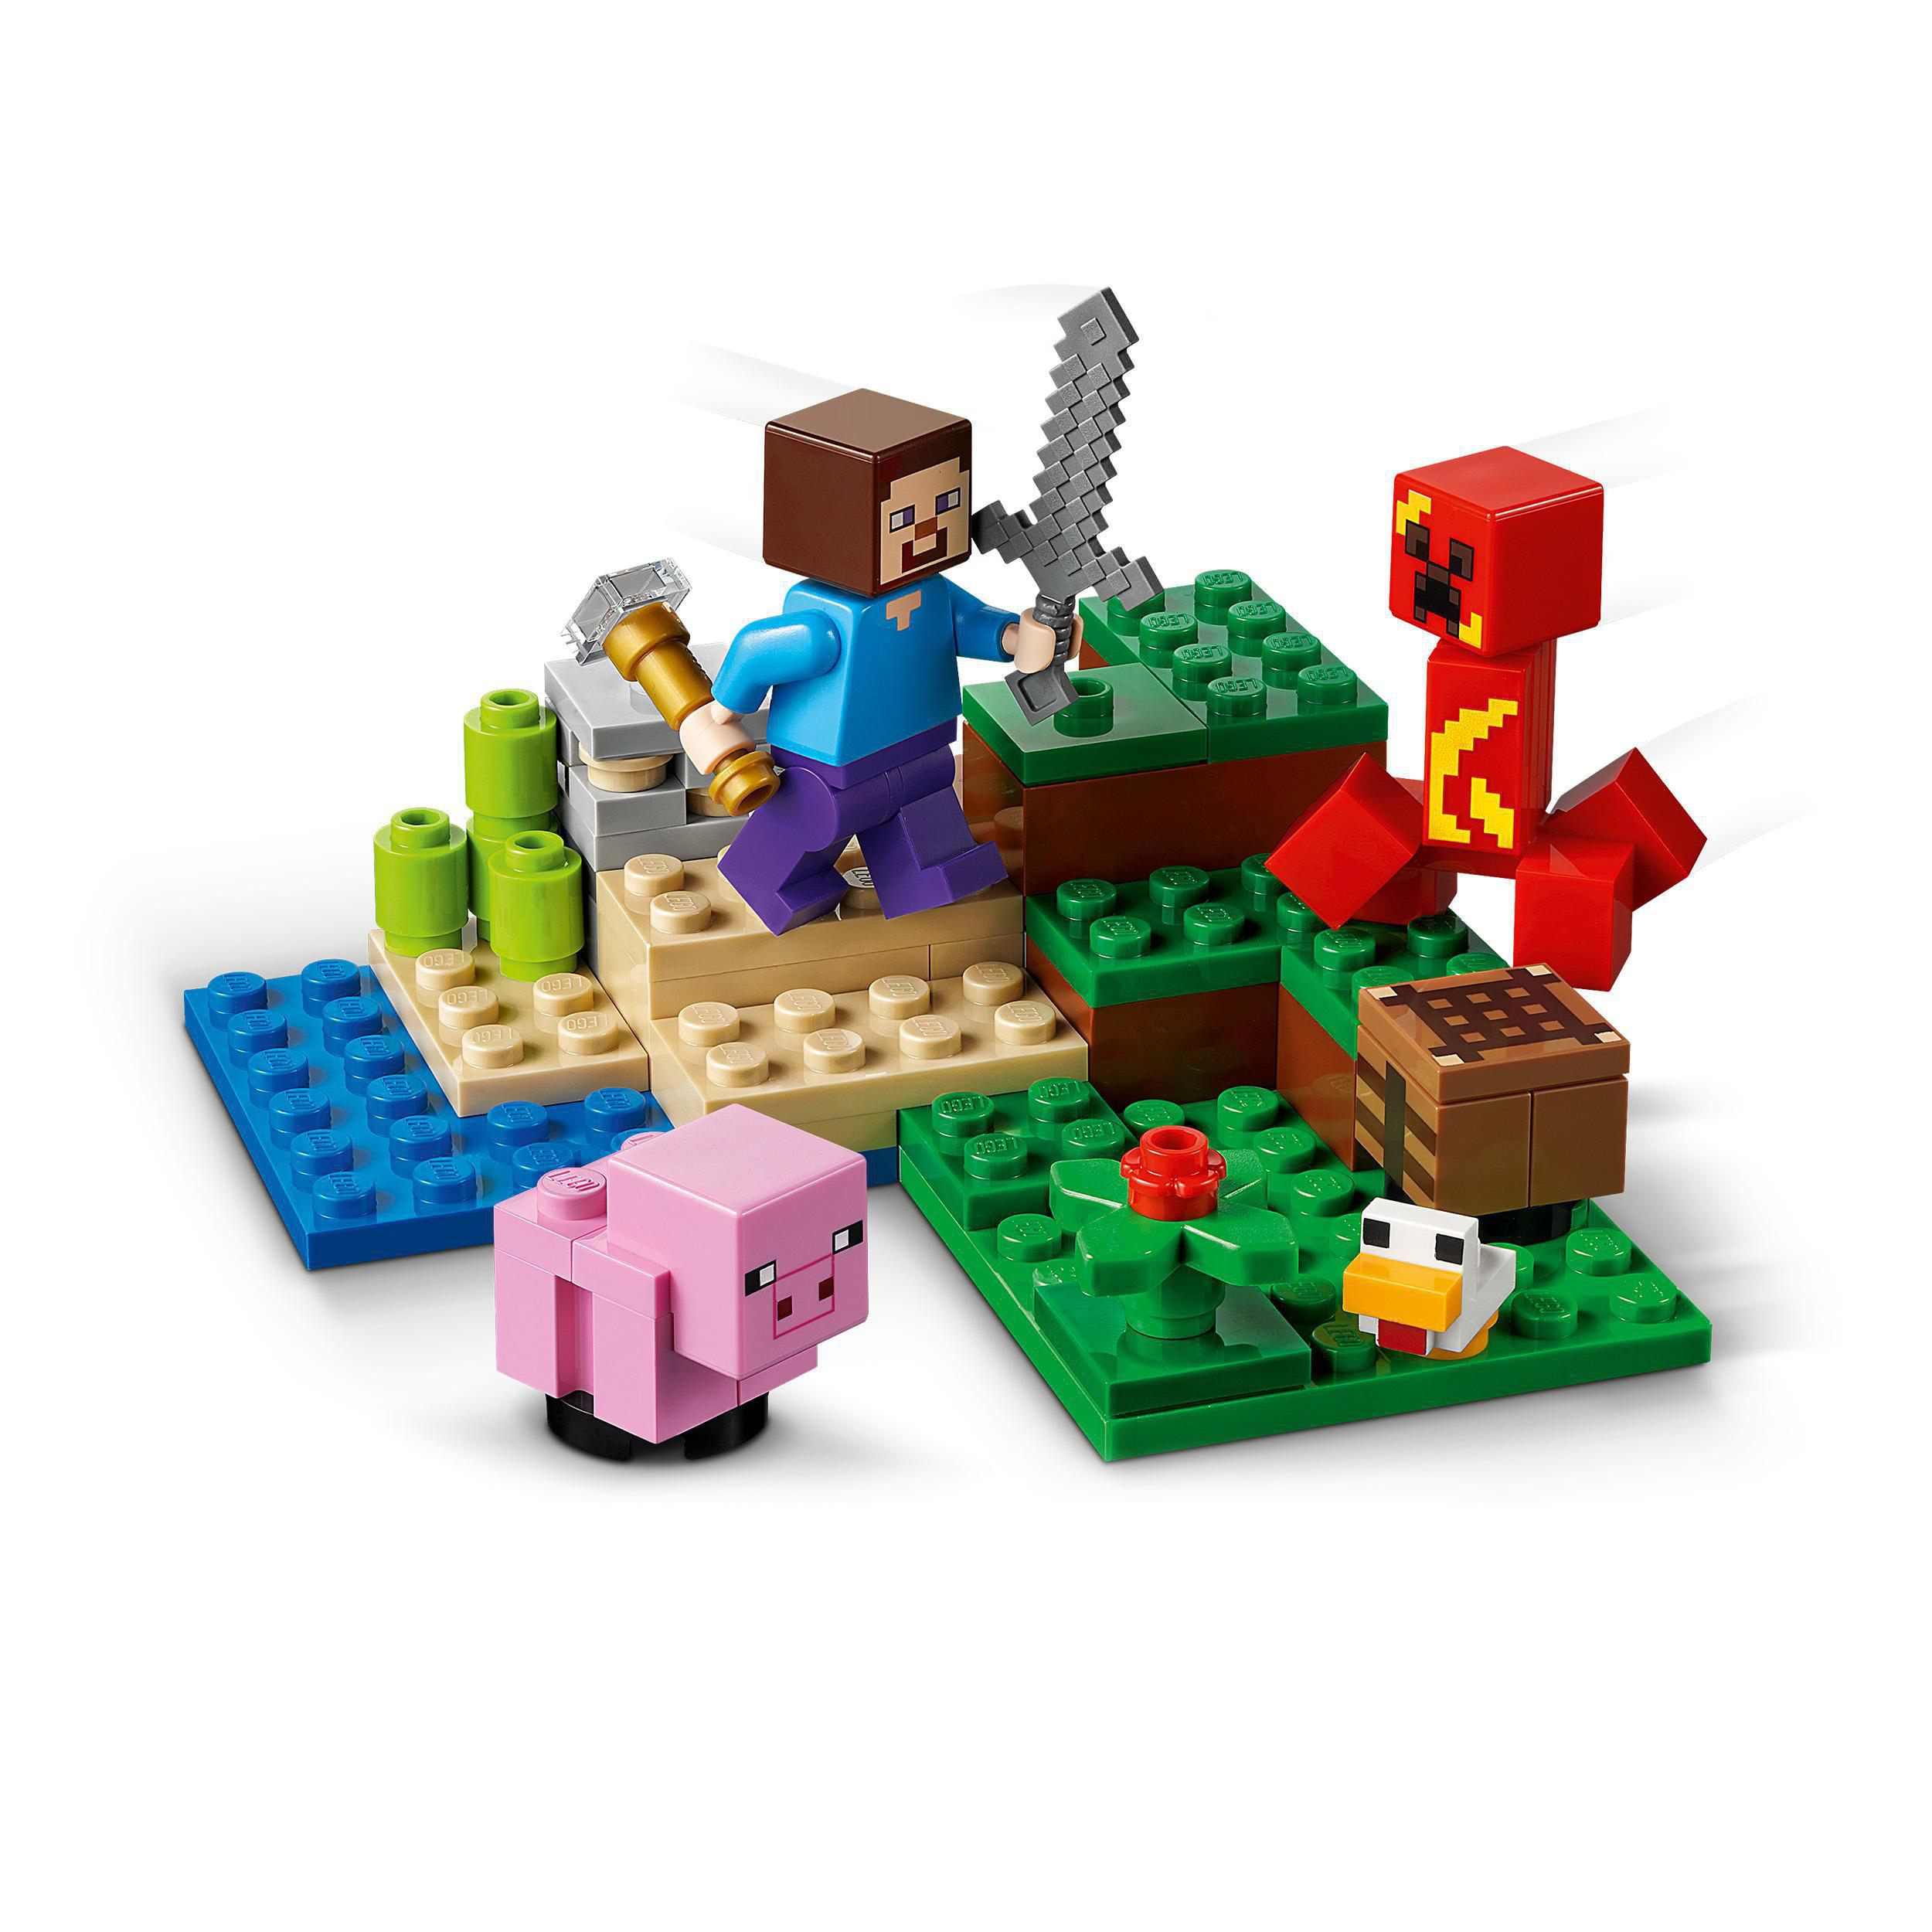 Bausatz, des 21177 Creeper™ Der Hinterhalt LEGO Minecraft Mehrfarbig